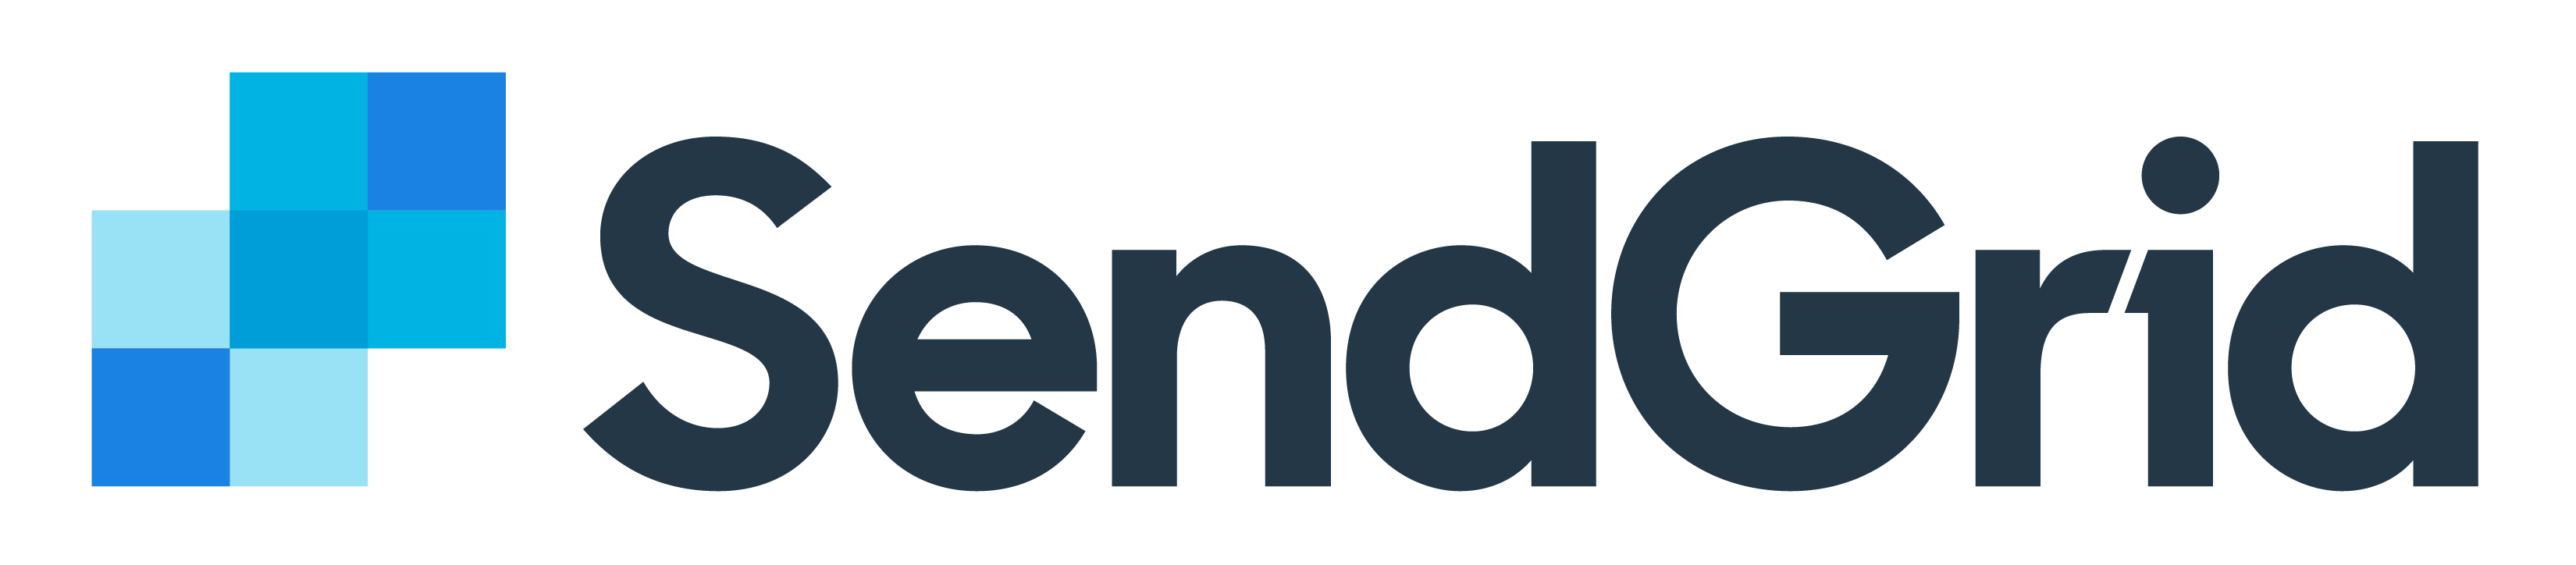 SendGrid logo, Get Us PPE partner